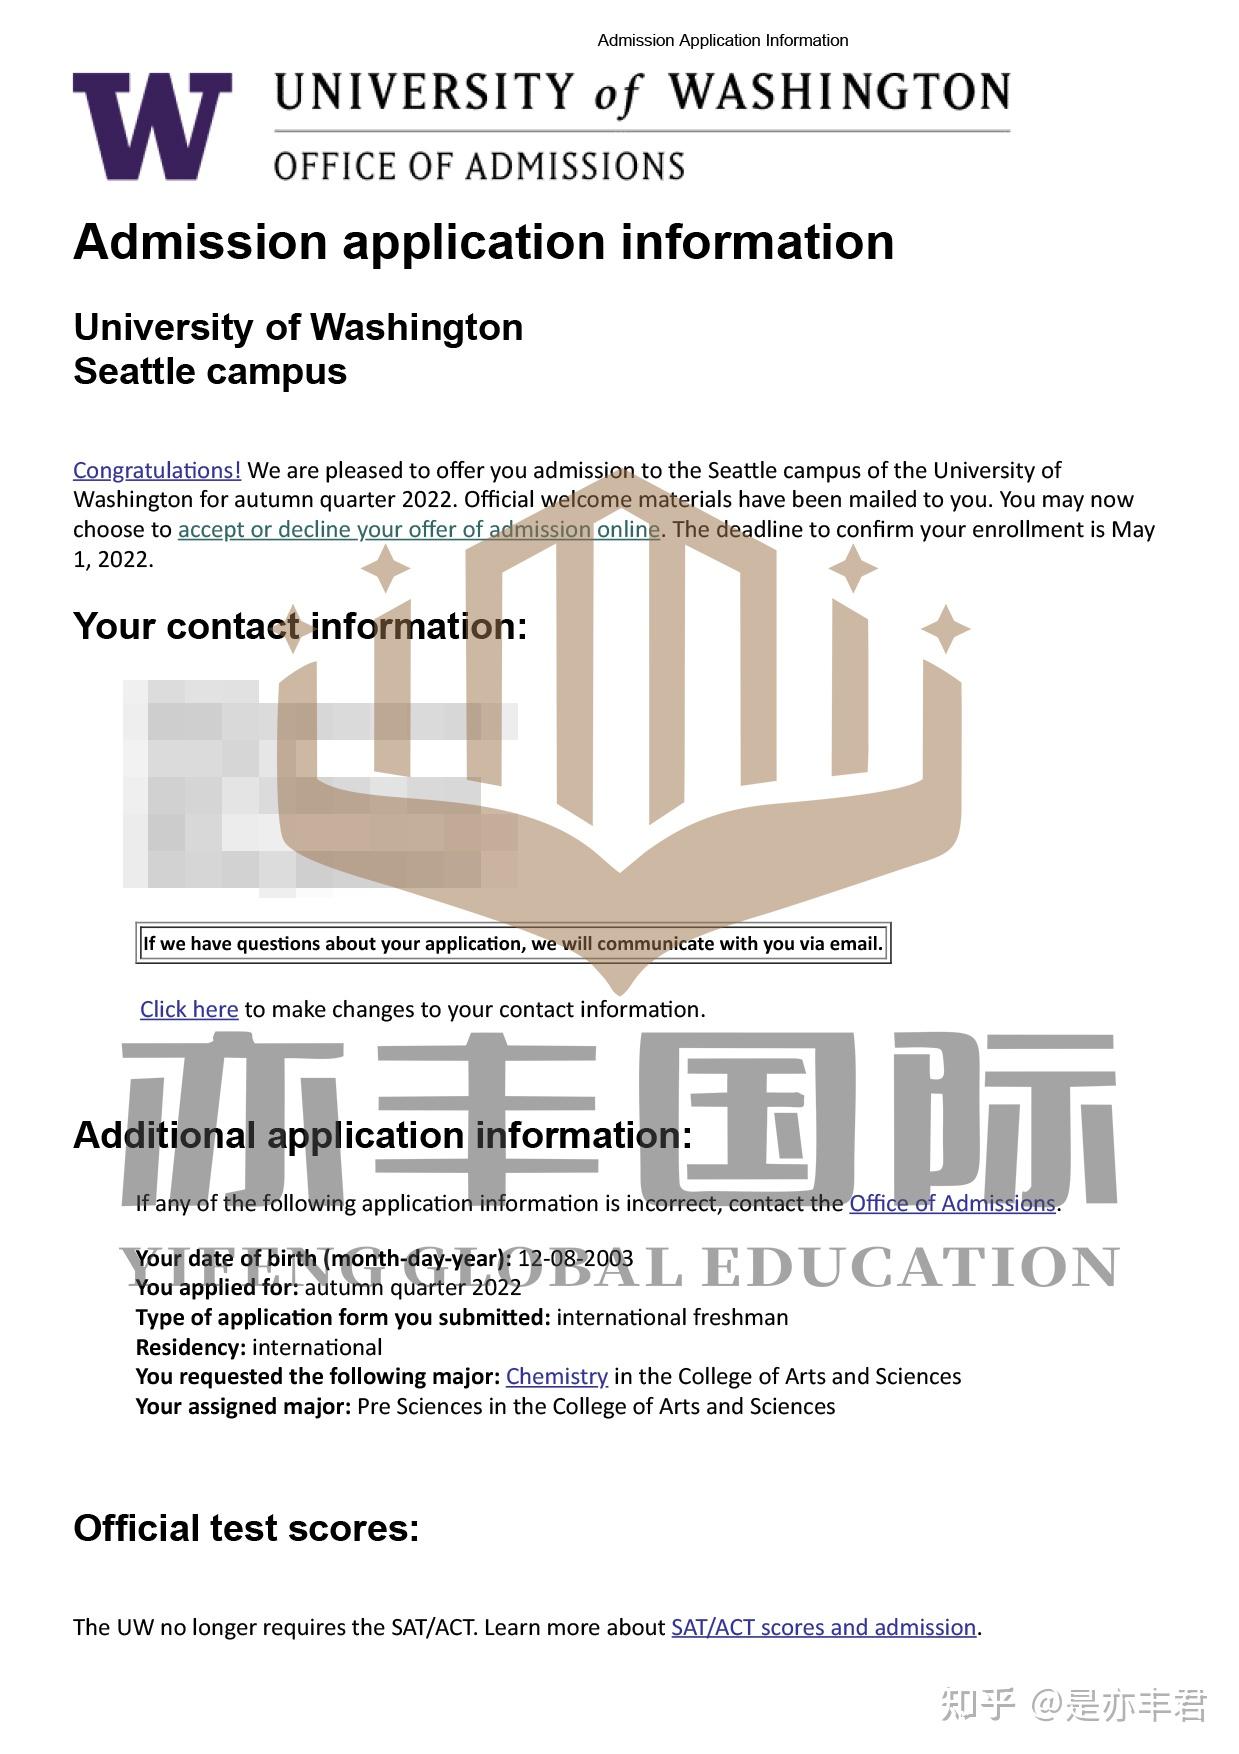 亦丰国际名校录取美本华盛顿大学西雅图分校offeruniversityof